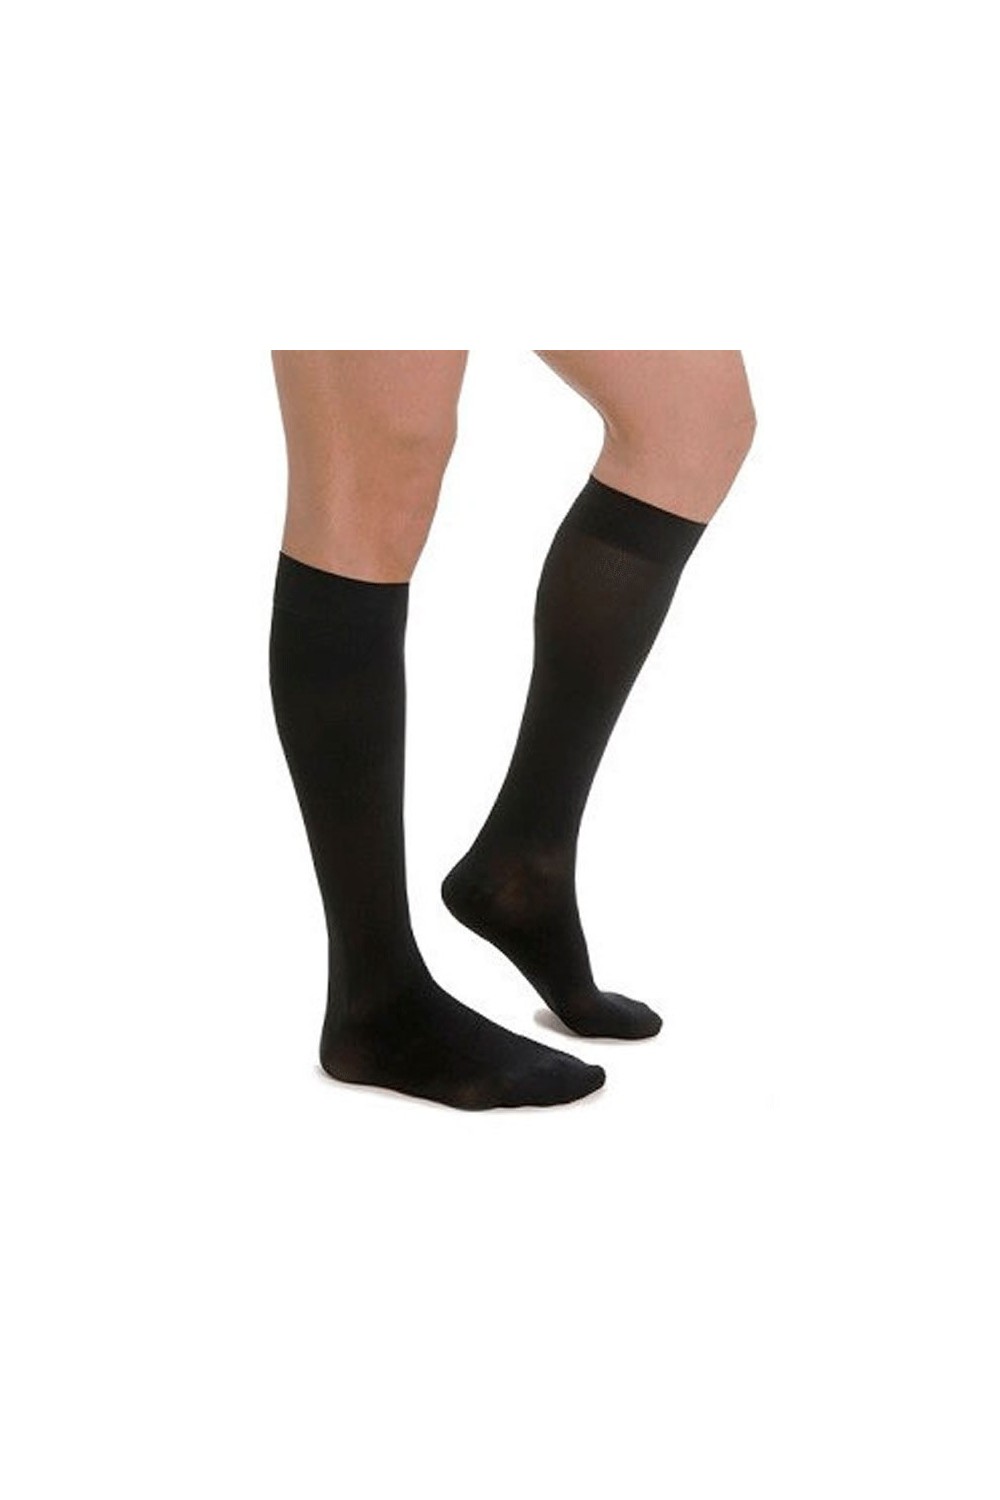 Medilast Comfort Sock Black S/M